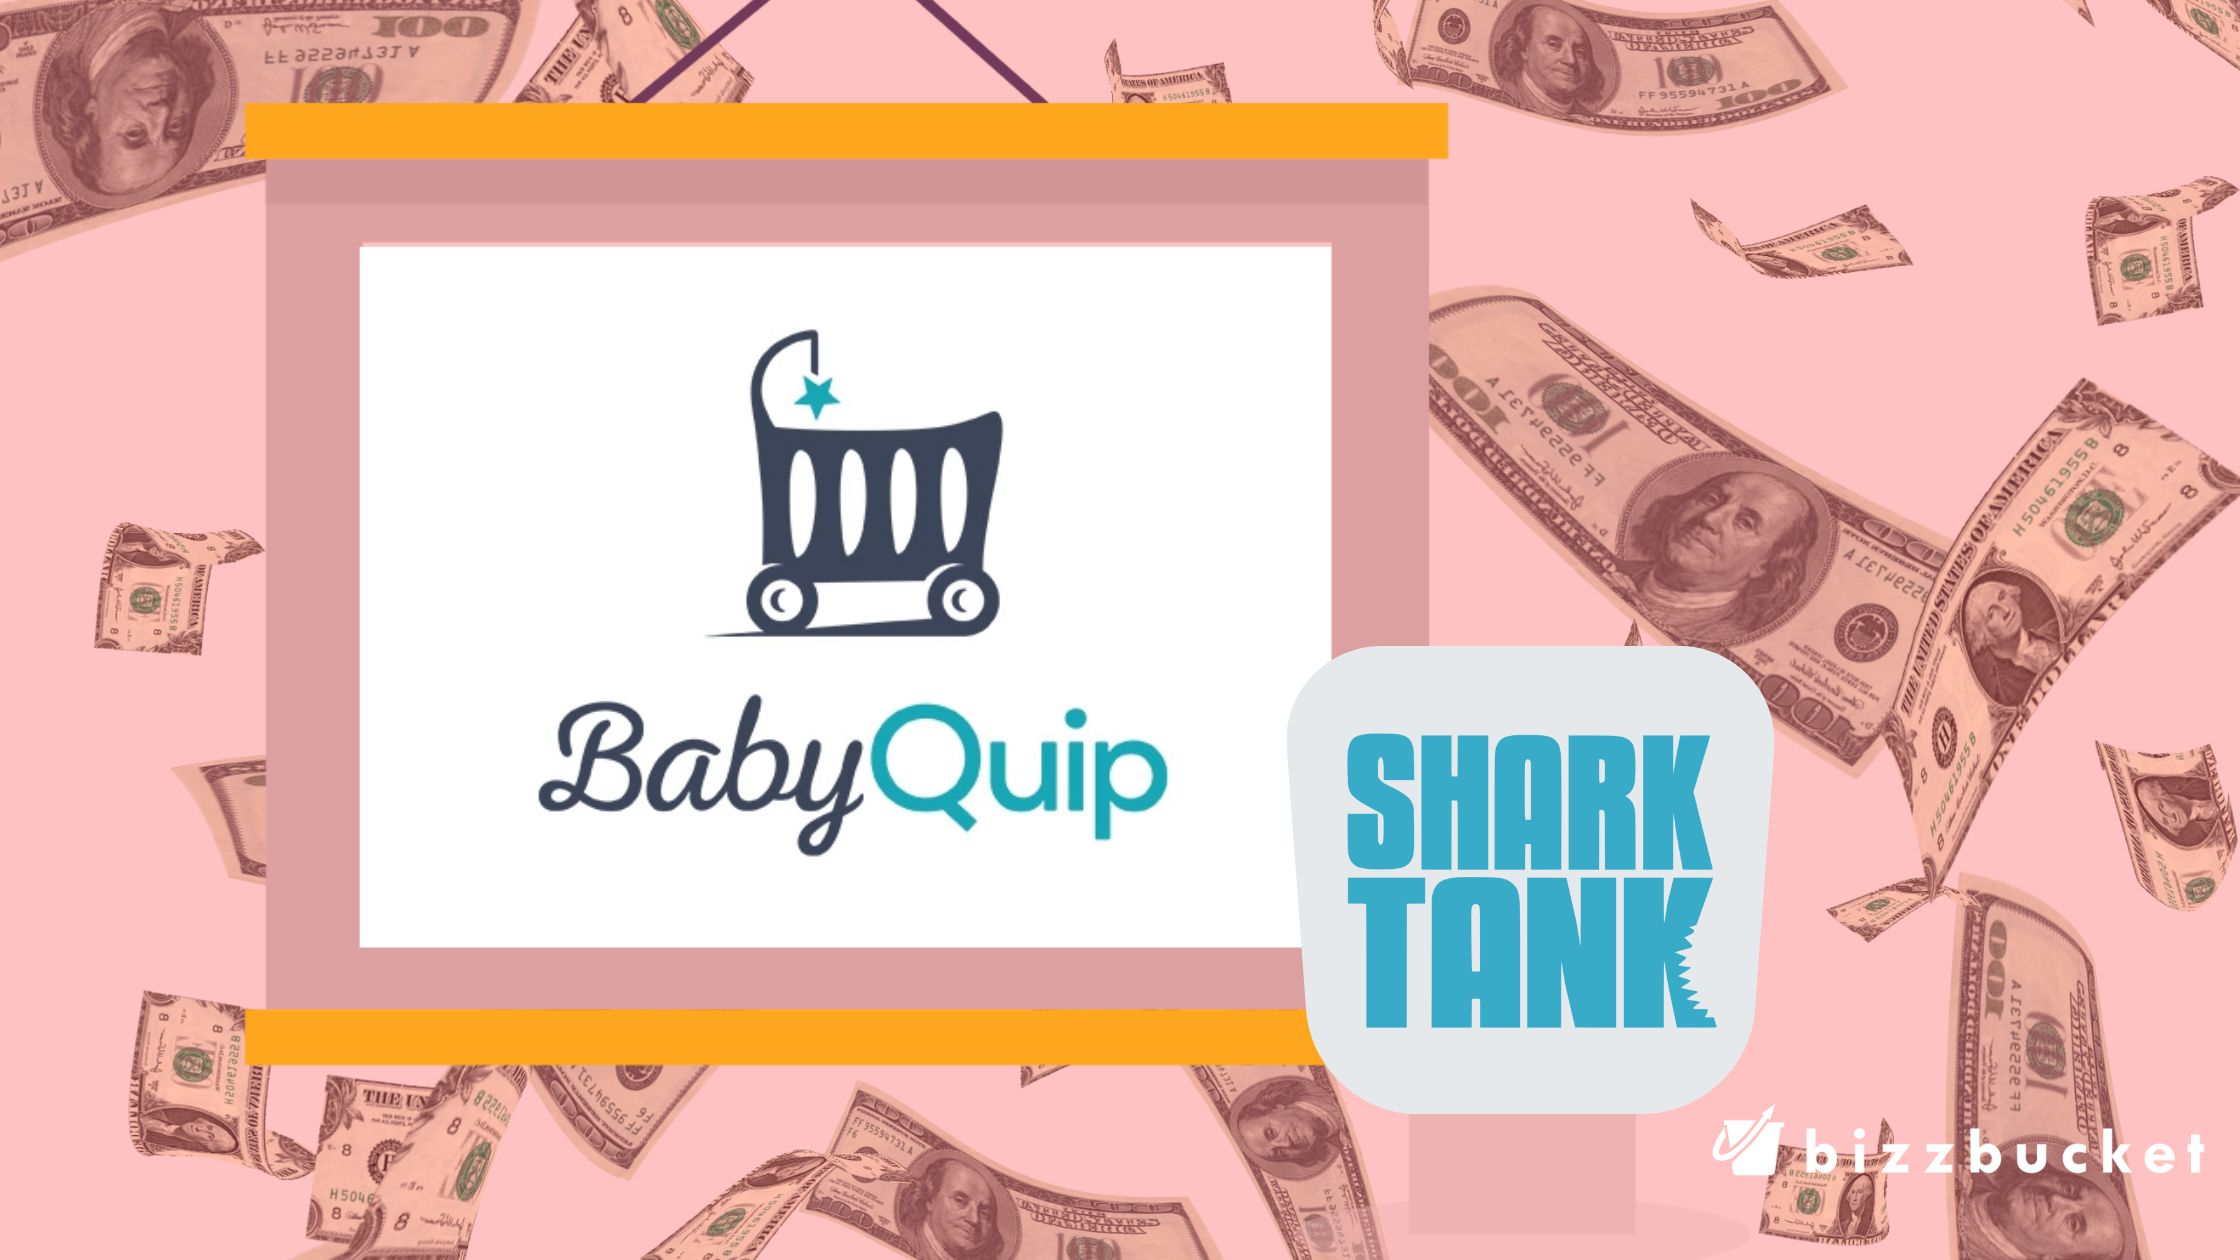 Baby Quip shark tank update